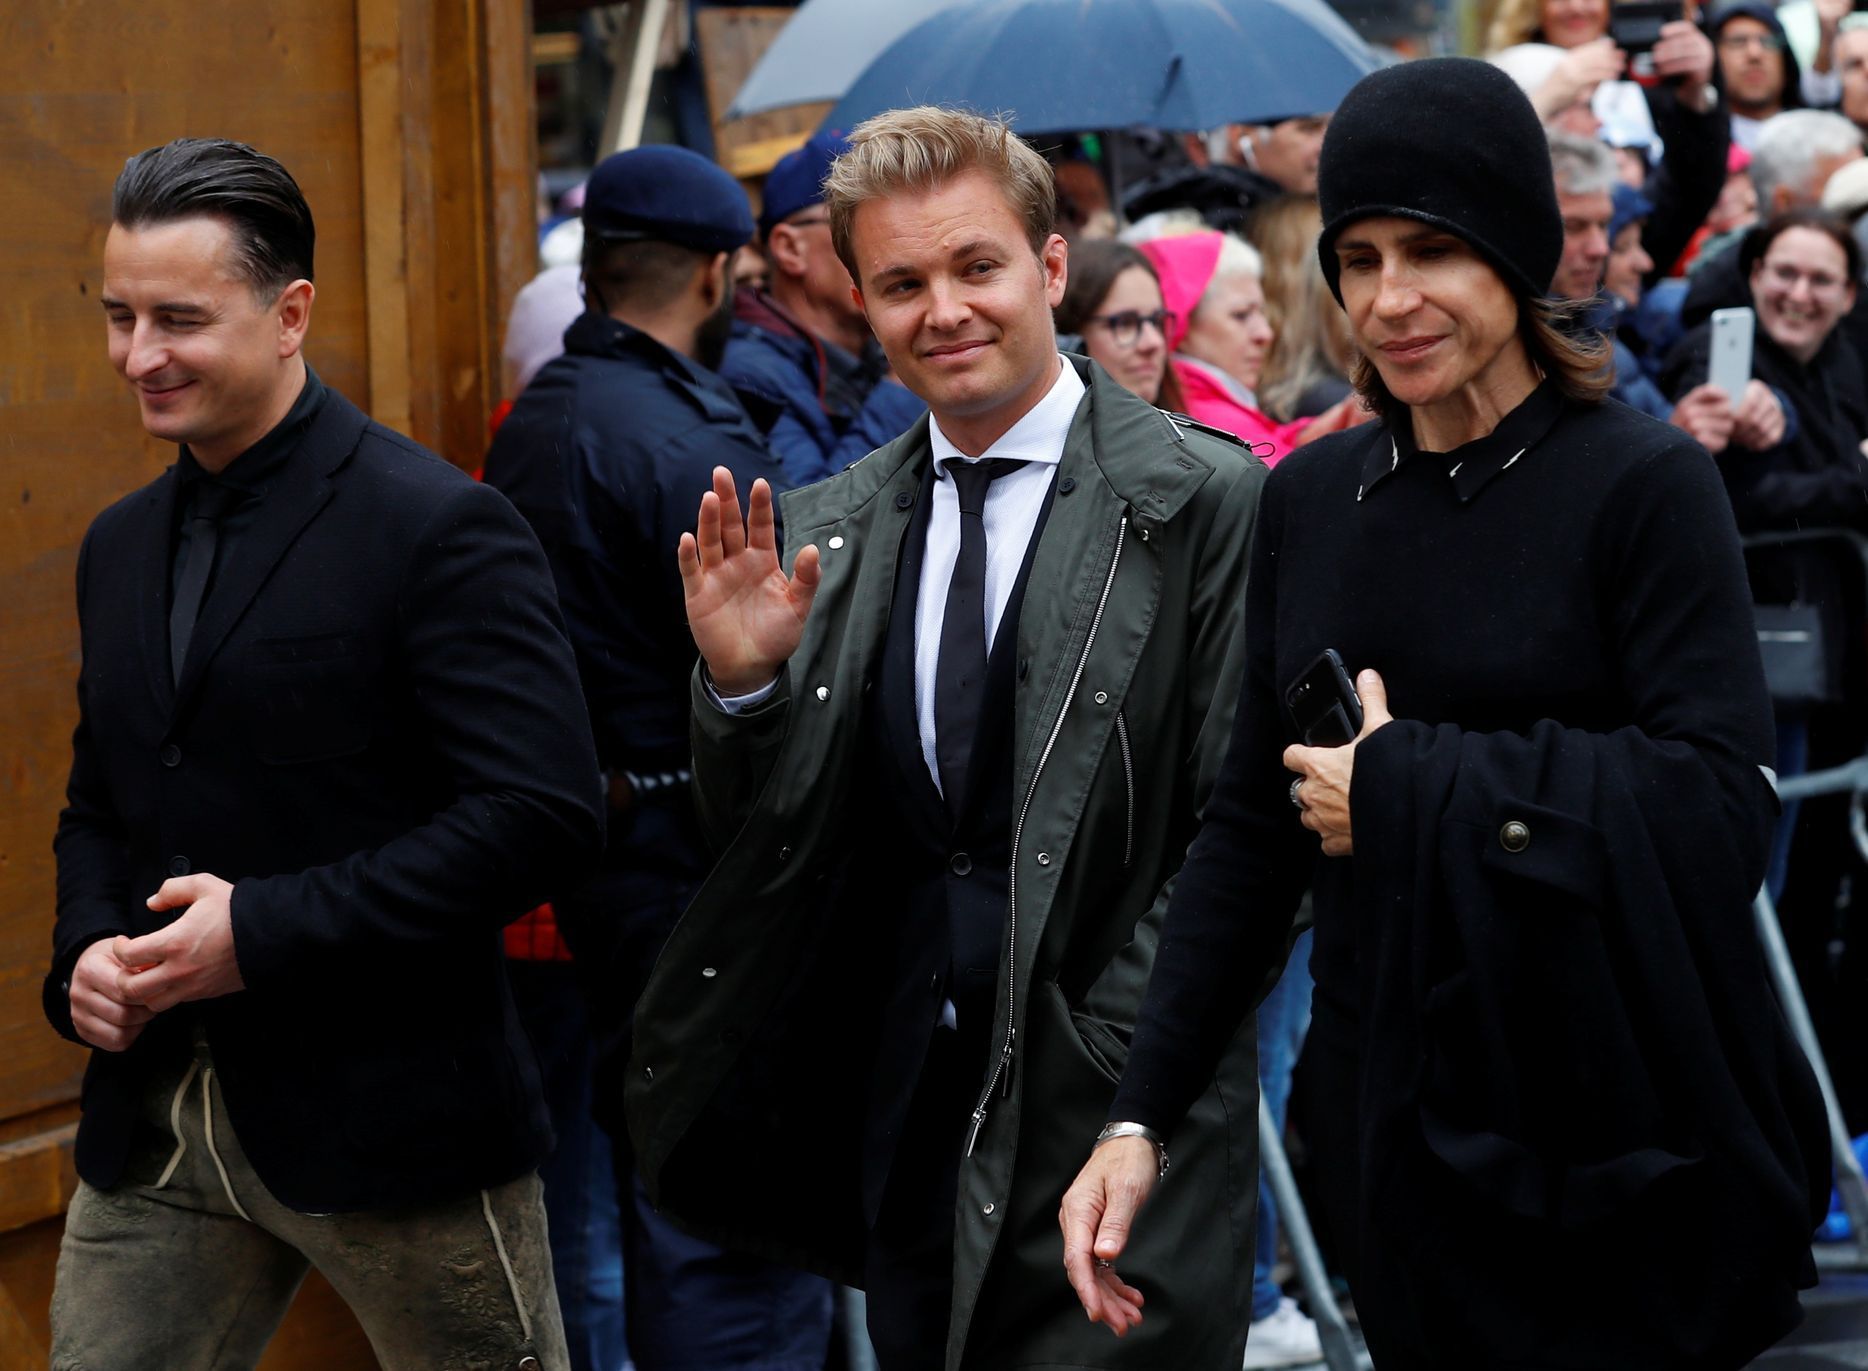 Zpěvák Andreas Gabalier a šampion F1 Nico Rosberg přicházejí na zádušní mši za Nikiho Laudu ve vídeňské katedrále svatého Štěpána